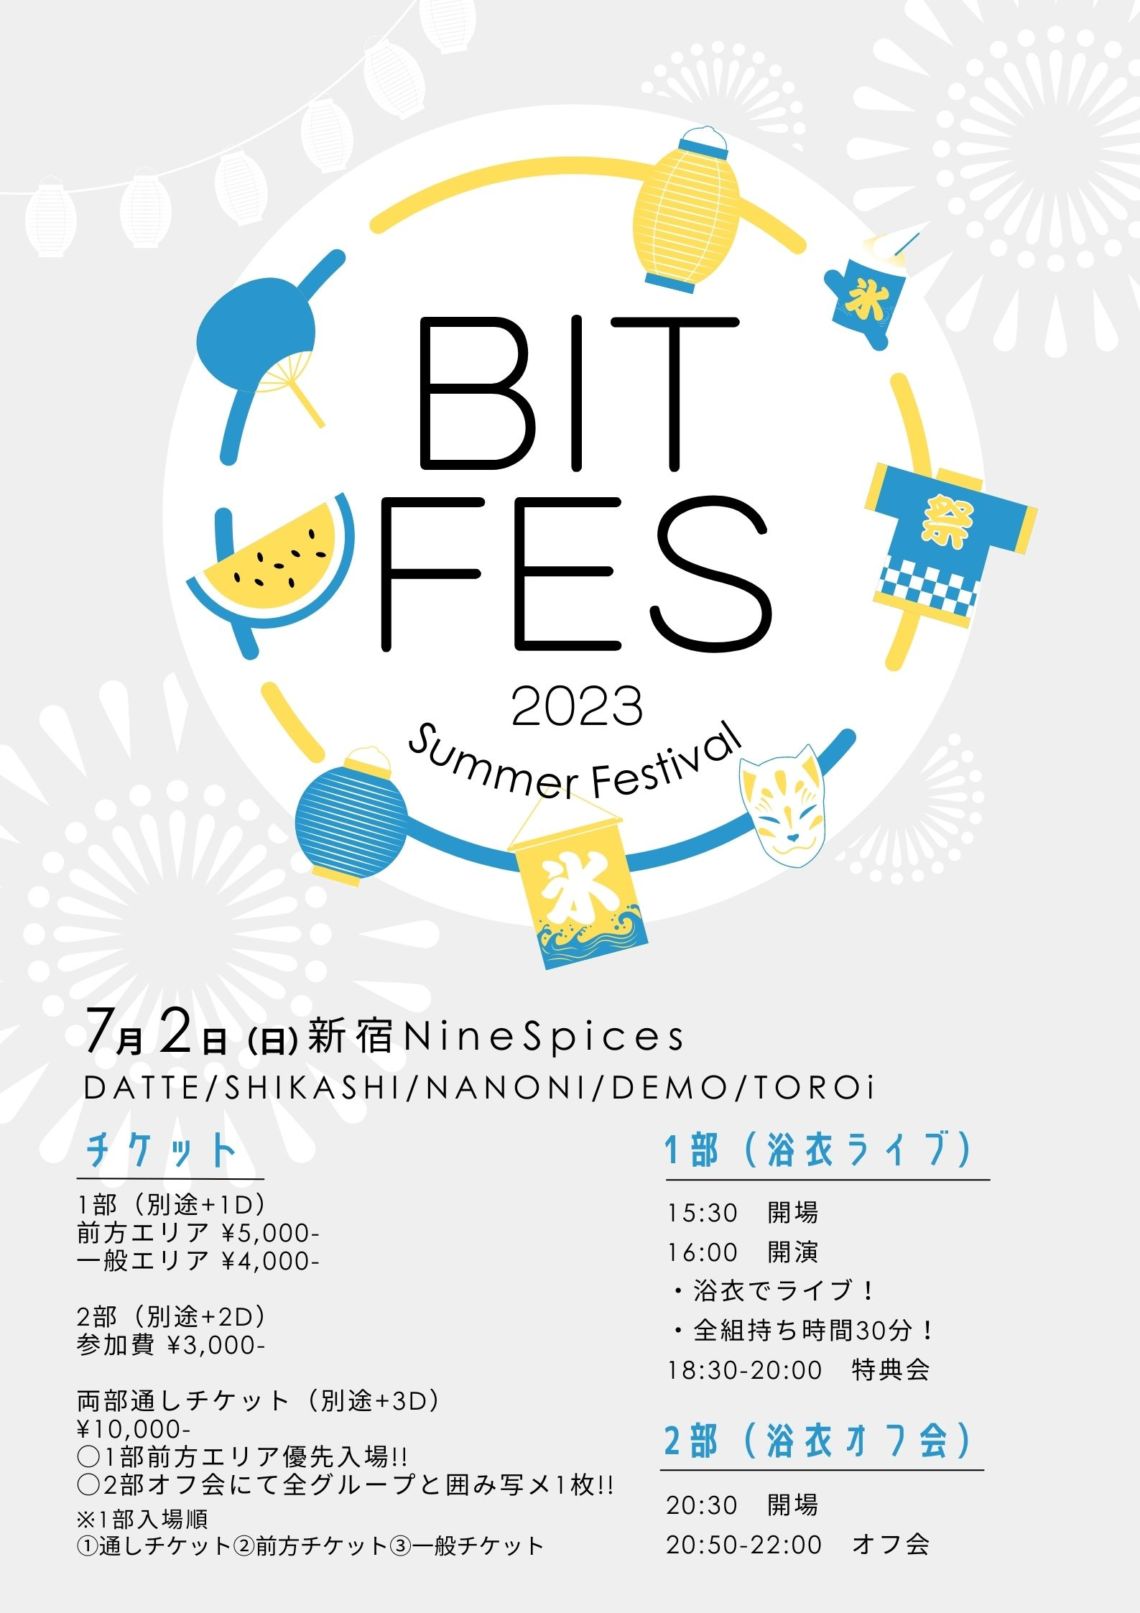 BIT FES 2023 ~Summer Festival~